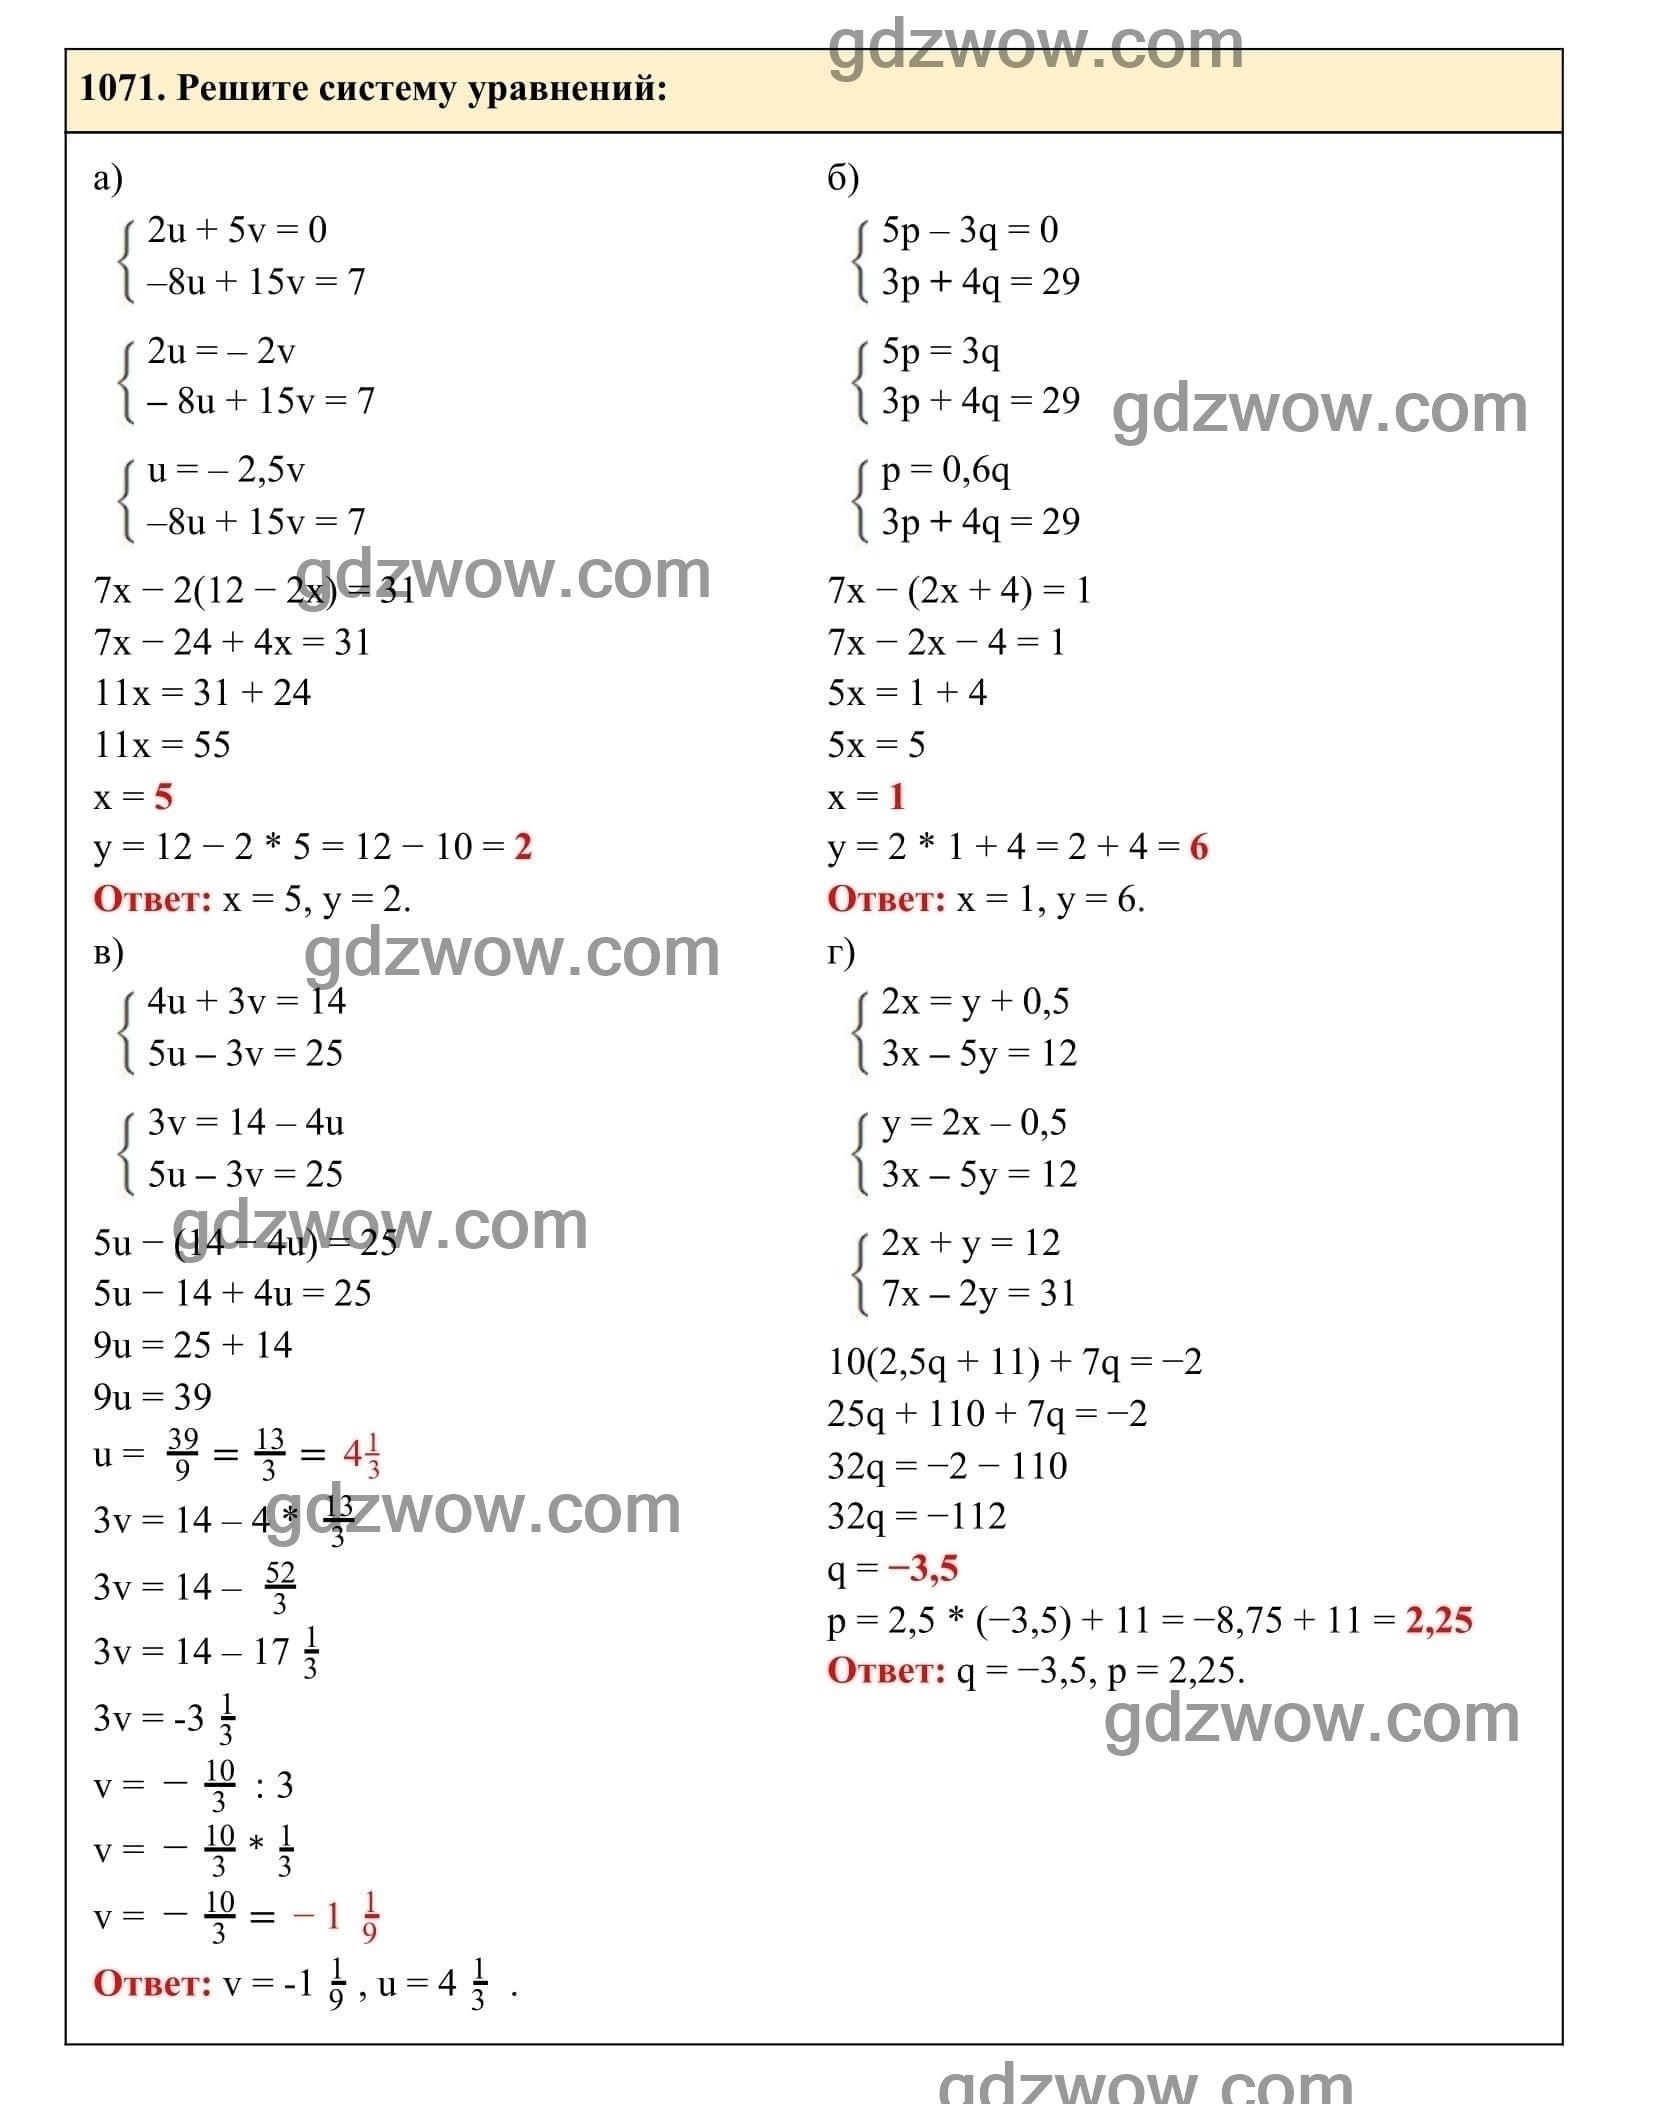 Упражнение 1071 - ГДЗ по Алгебре 7 класс Учебник Макарычев (решебник) - GDZwow